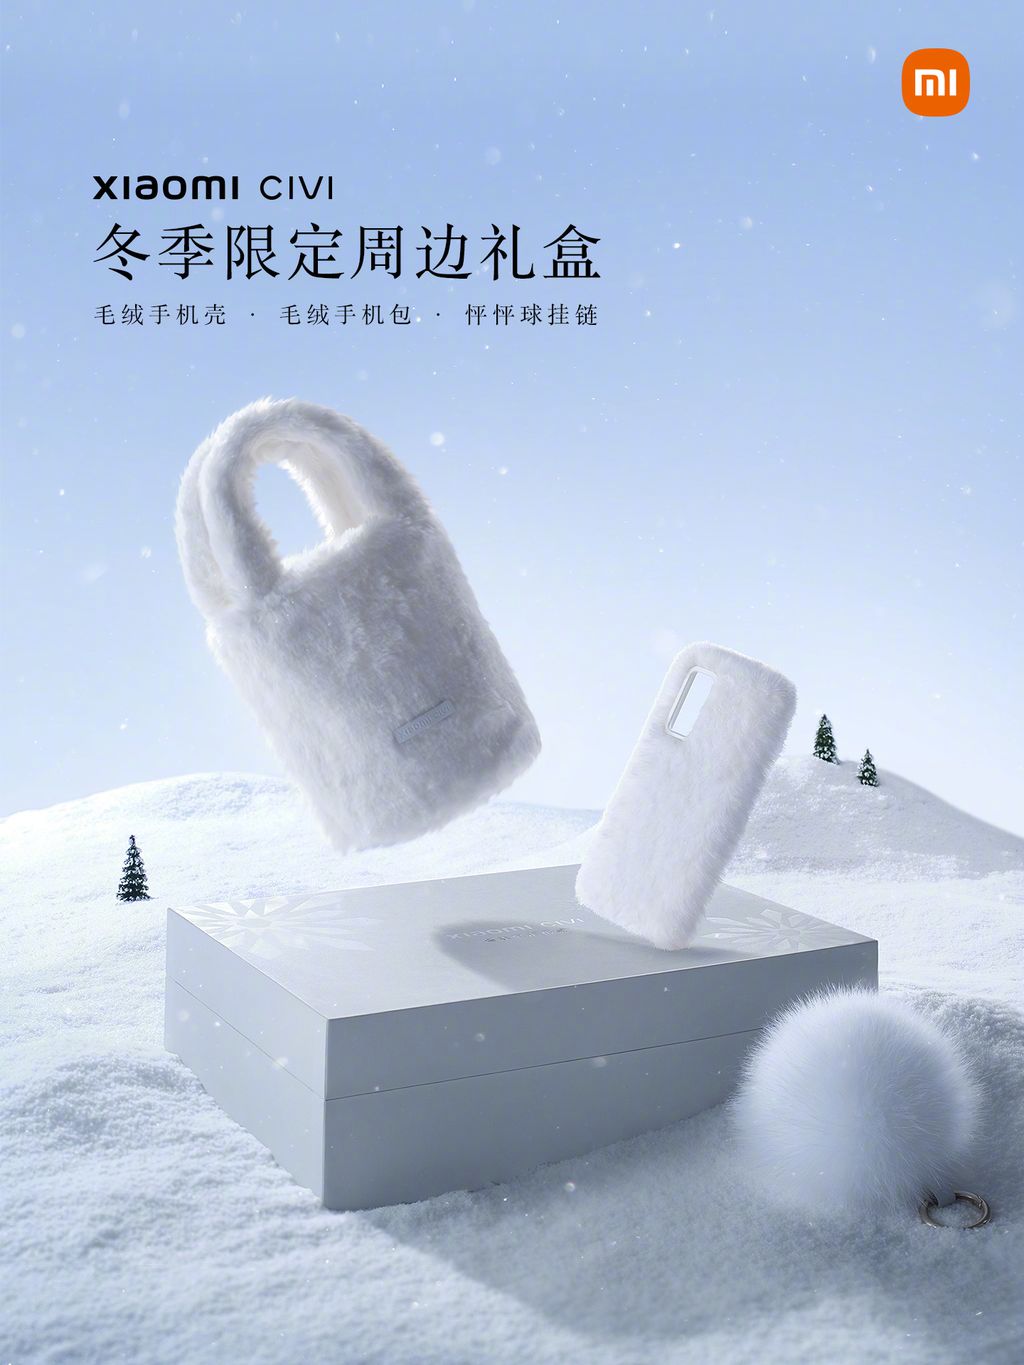 Acessórios da edição especial incluem capinha, bolsa e bolinha (Imagem: Divulgação/Xiaomi)